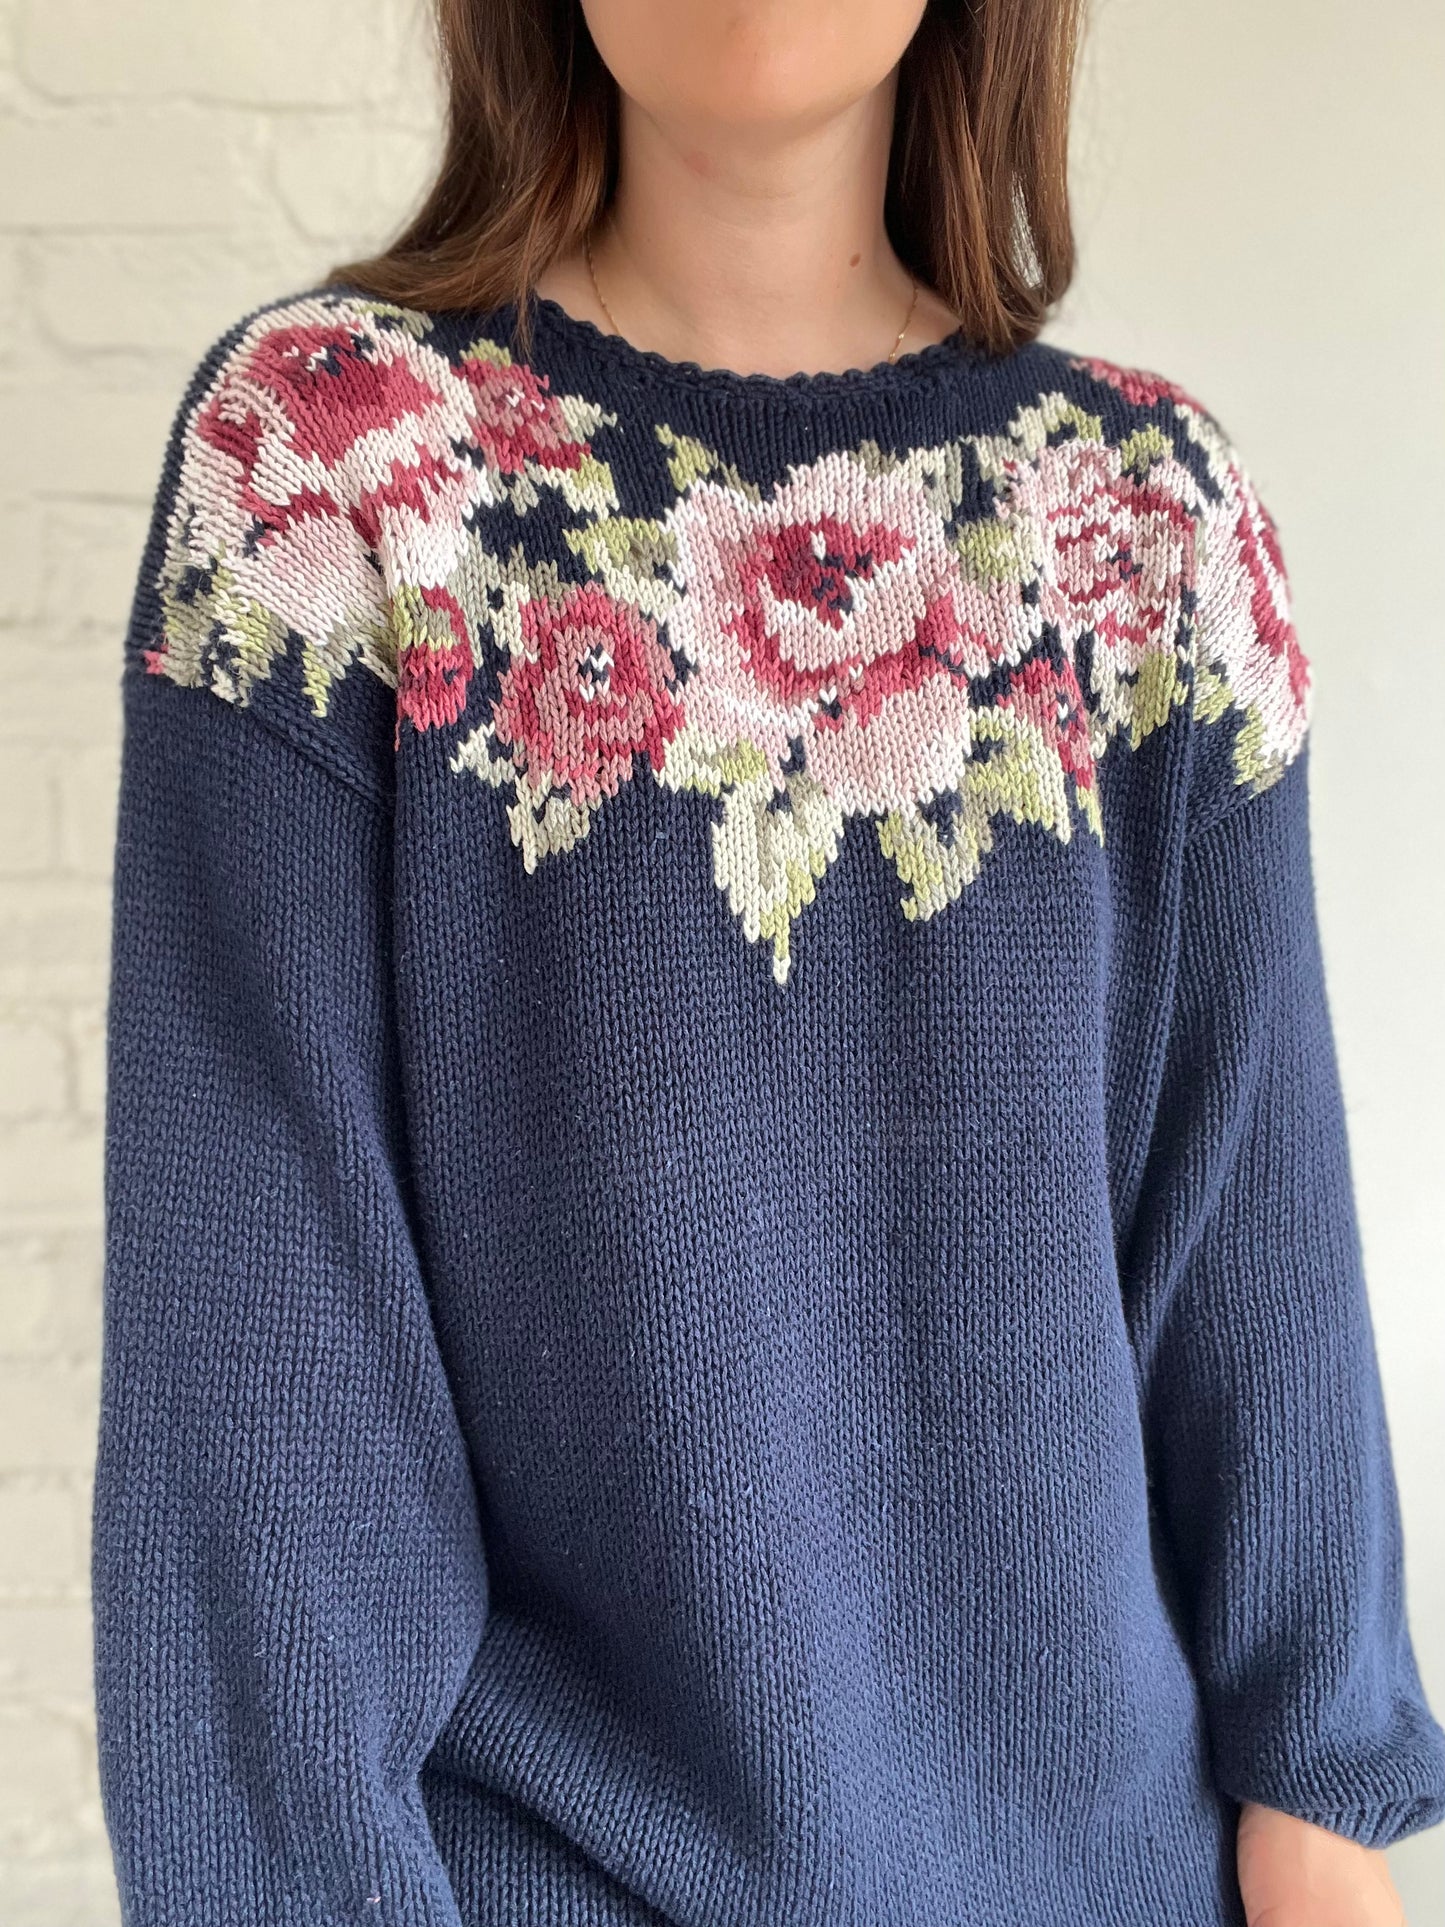 Pink Roses Crochet Sweater - XL/XXL